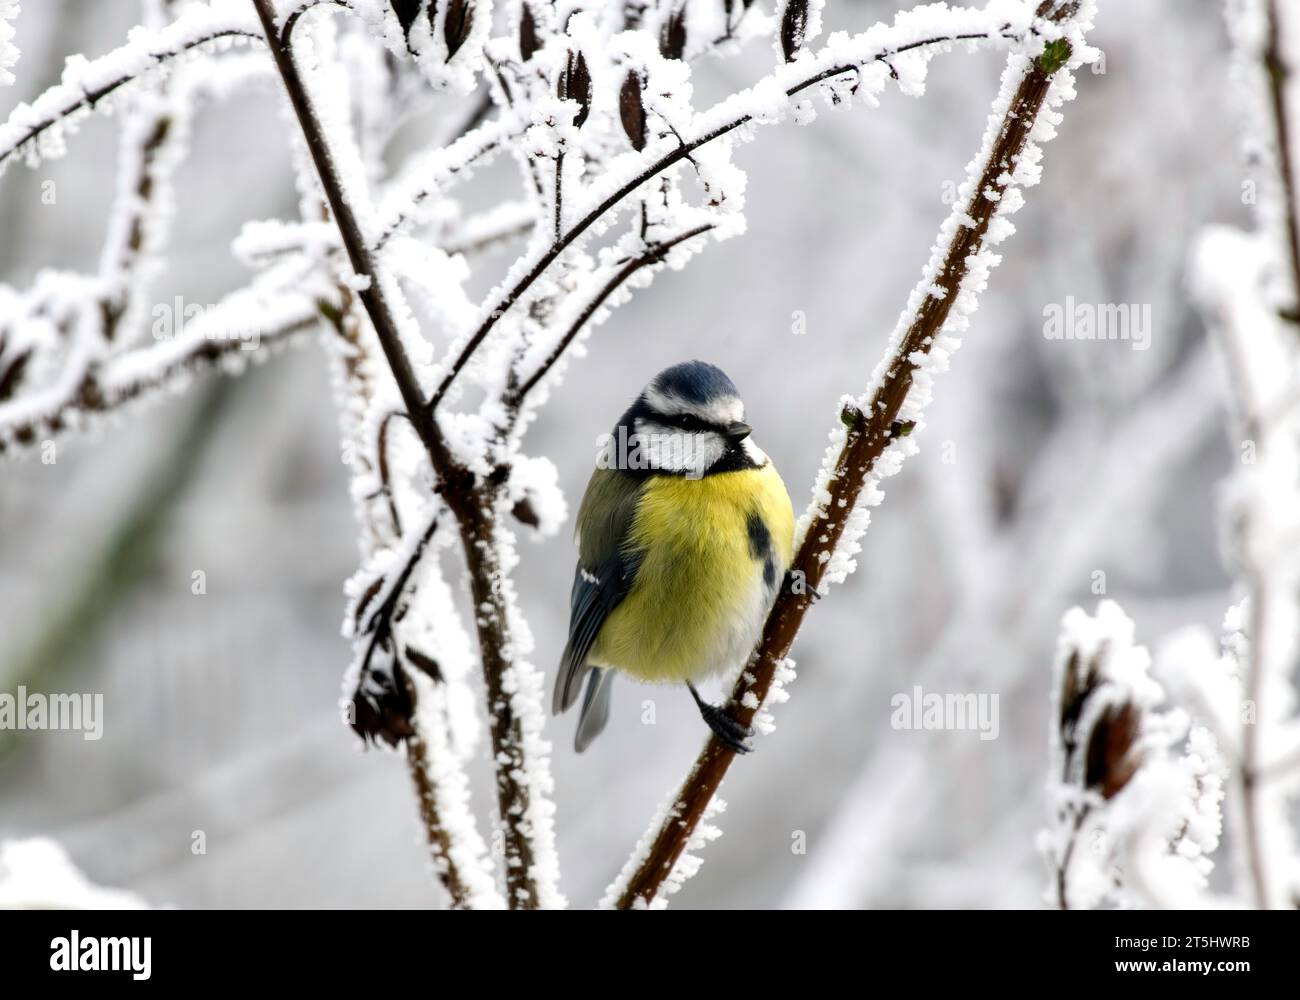 Oiseau jaune bleu perché sur la branche avec de la neige en hiver 2022, Allemagne Banque D'Images